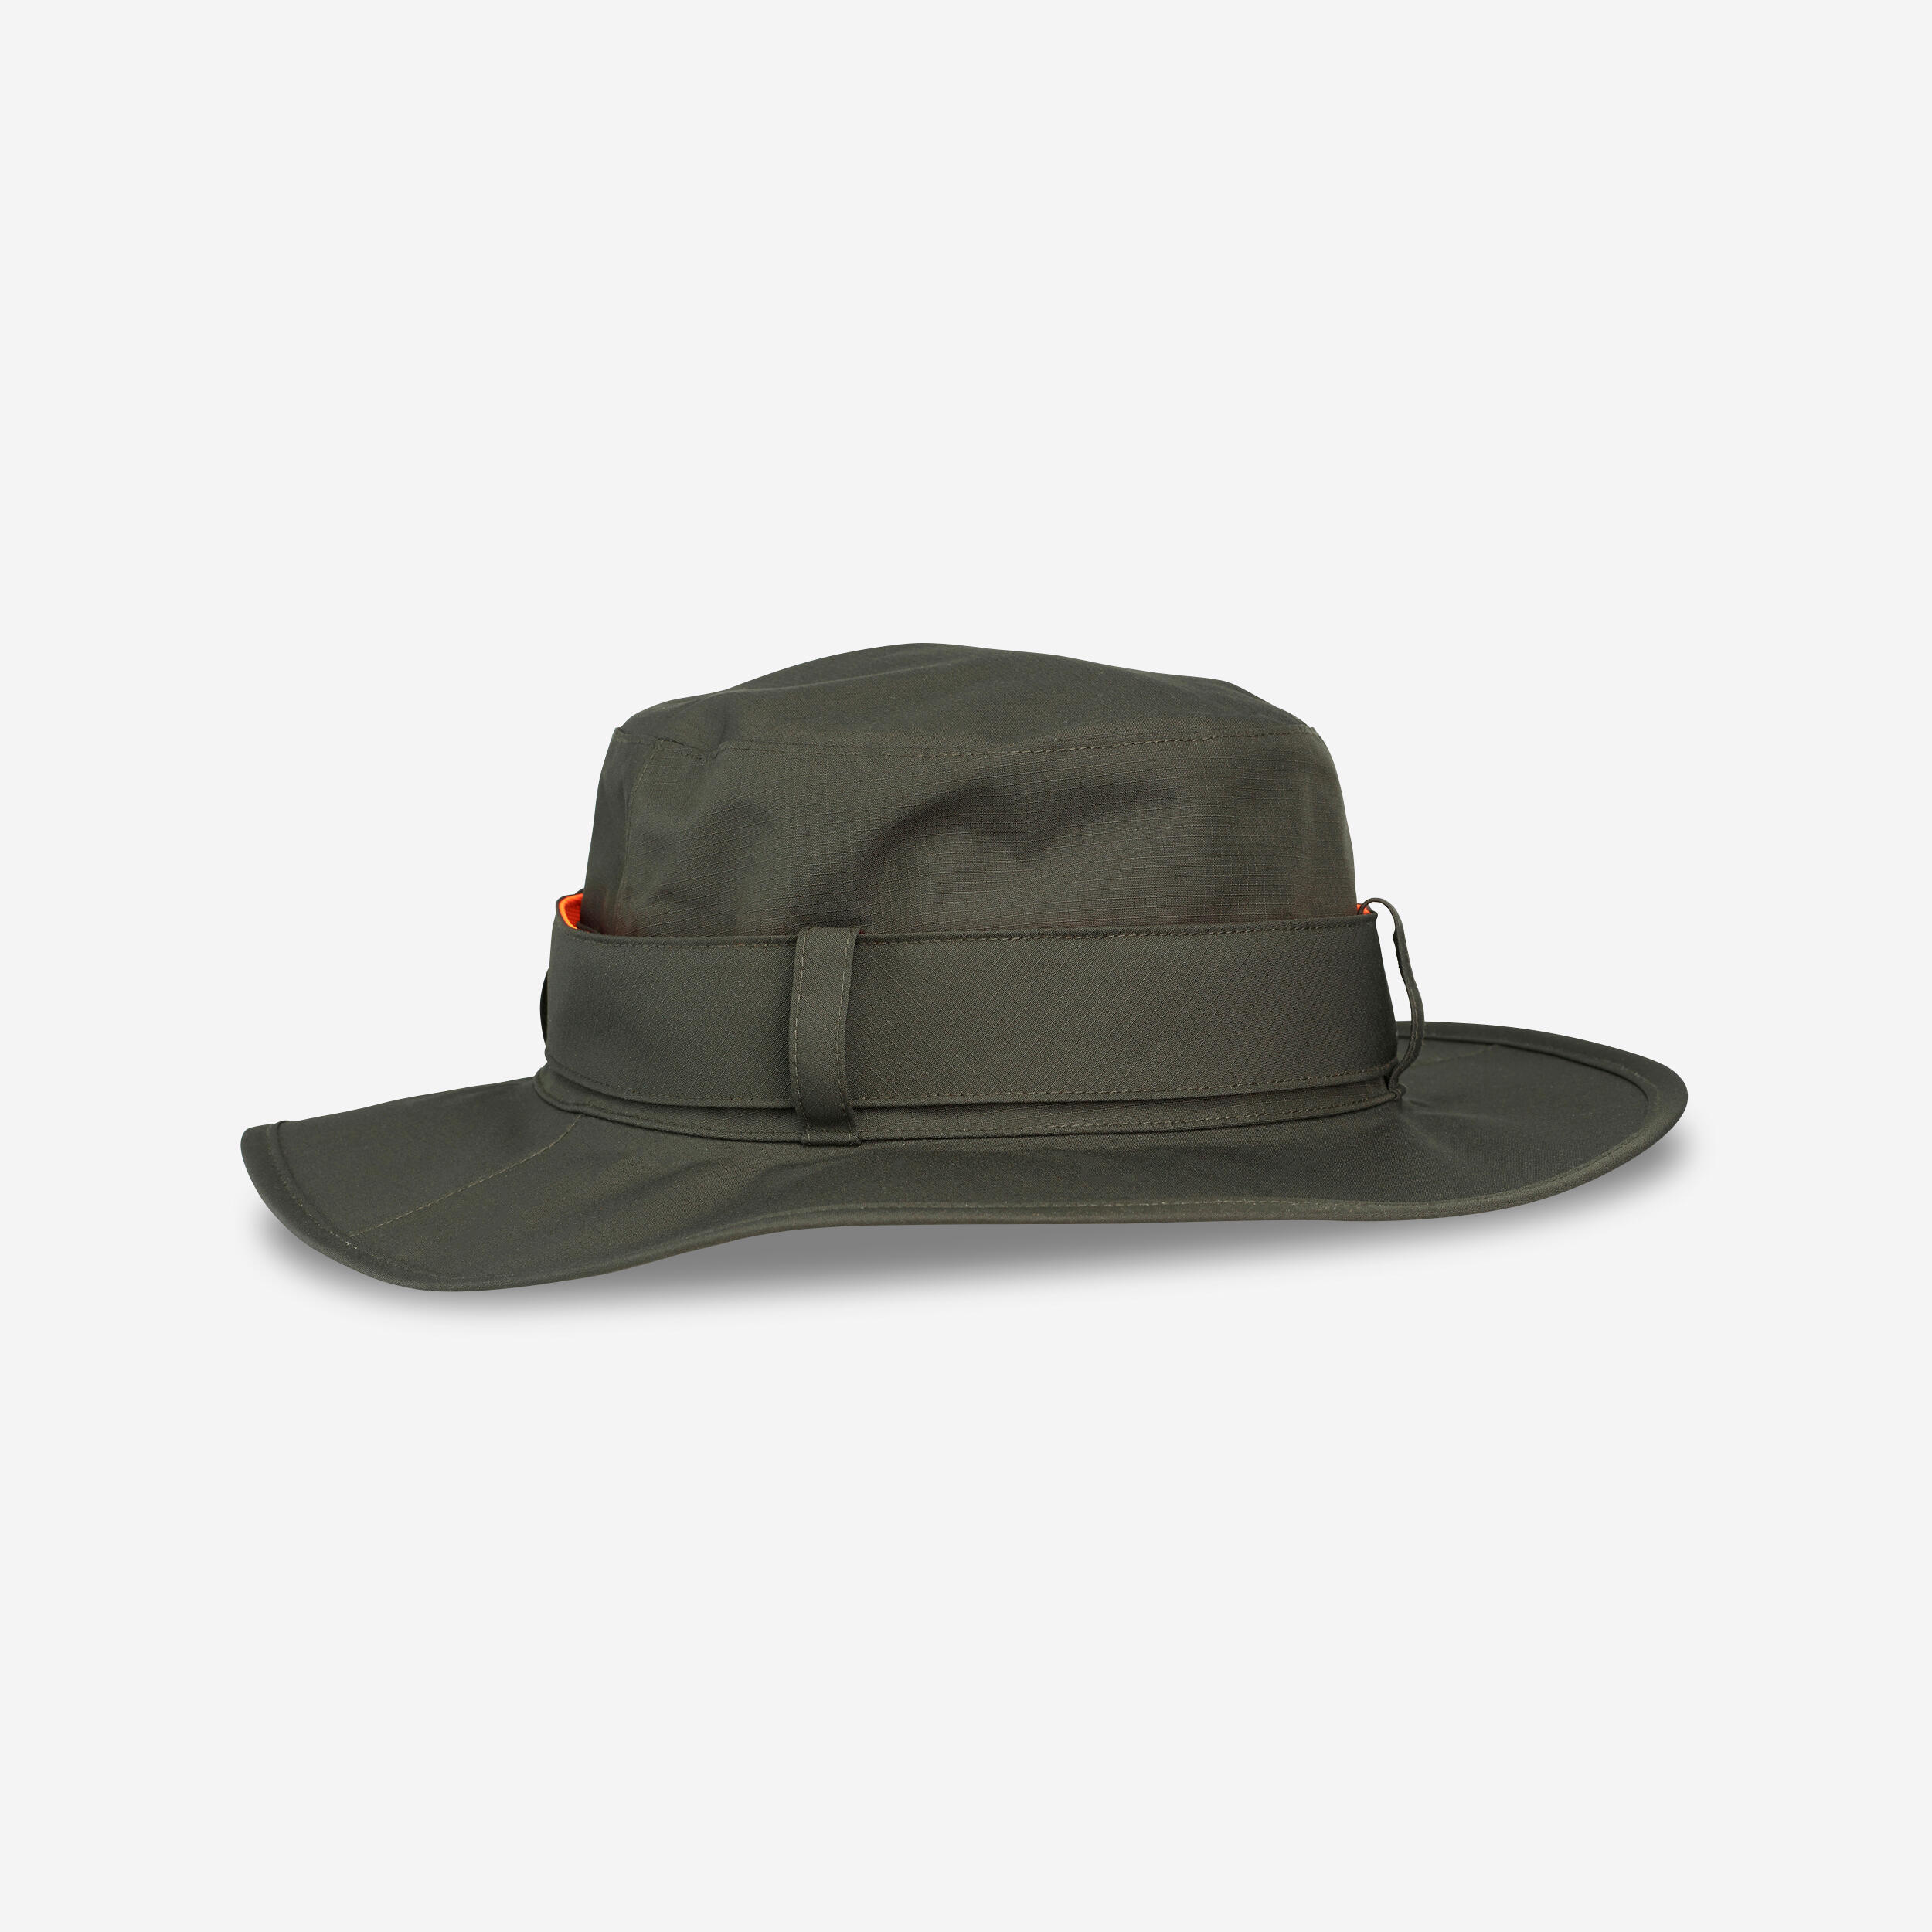 Pălărie SG520 impermeabilă și rezistentă verde bărbați barbati imagine 2022